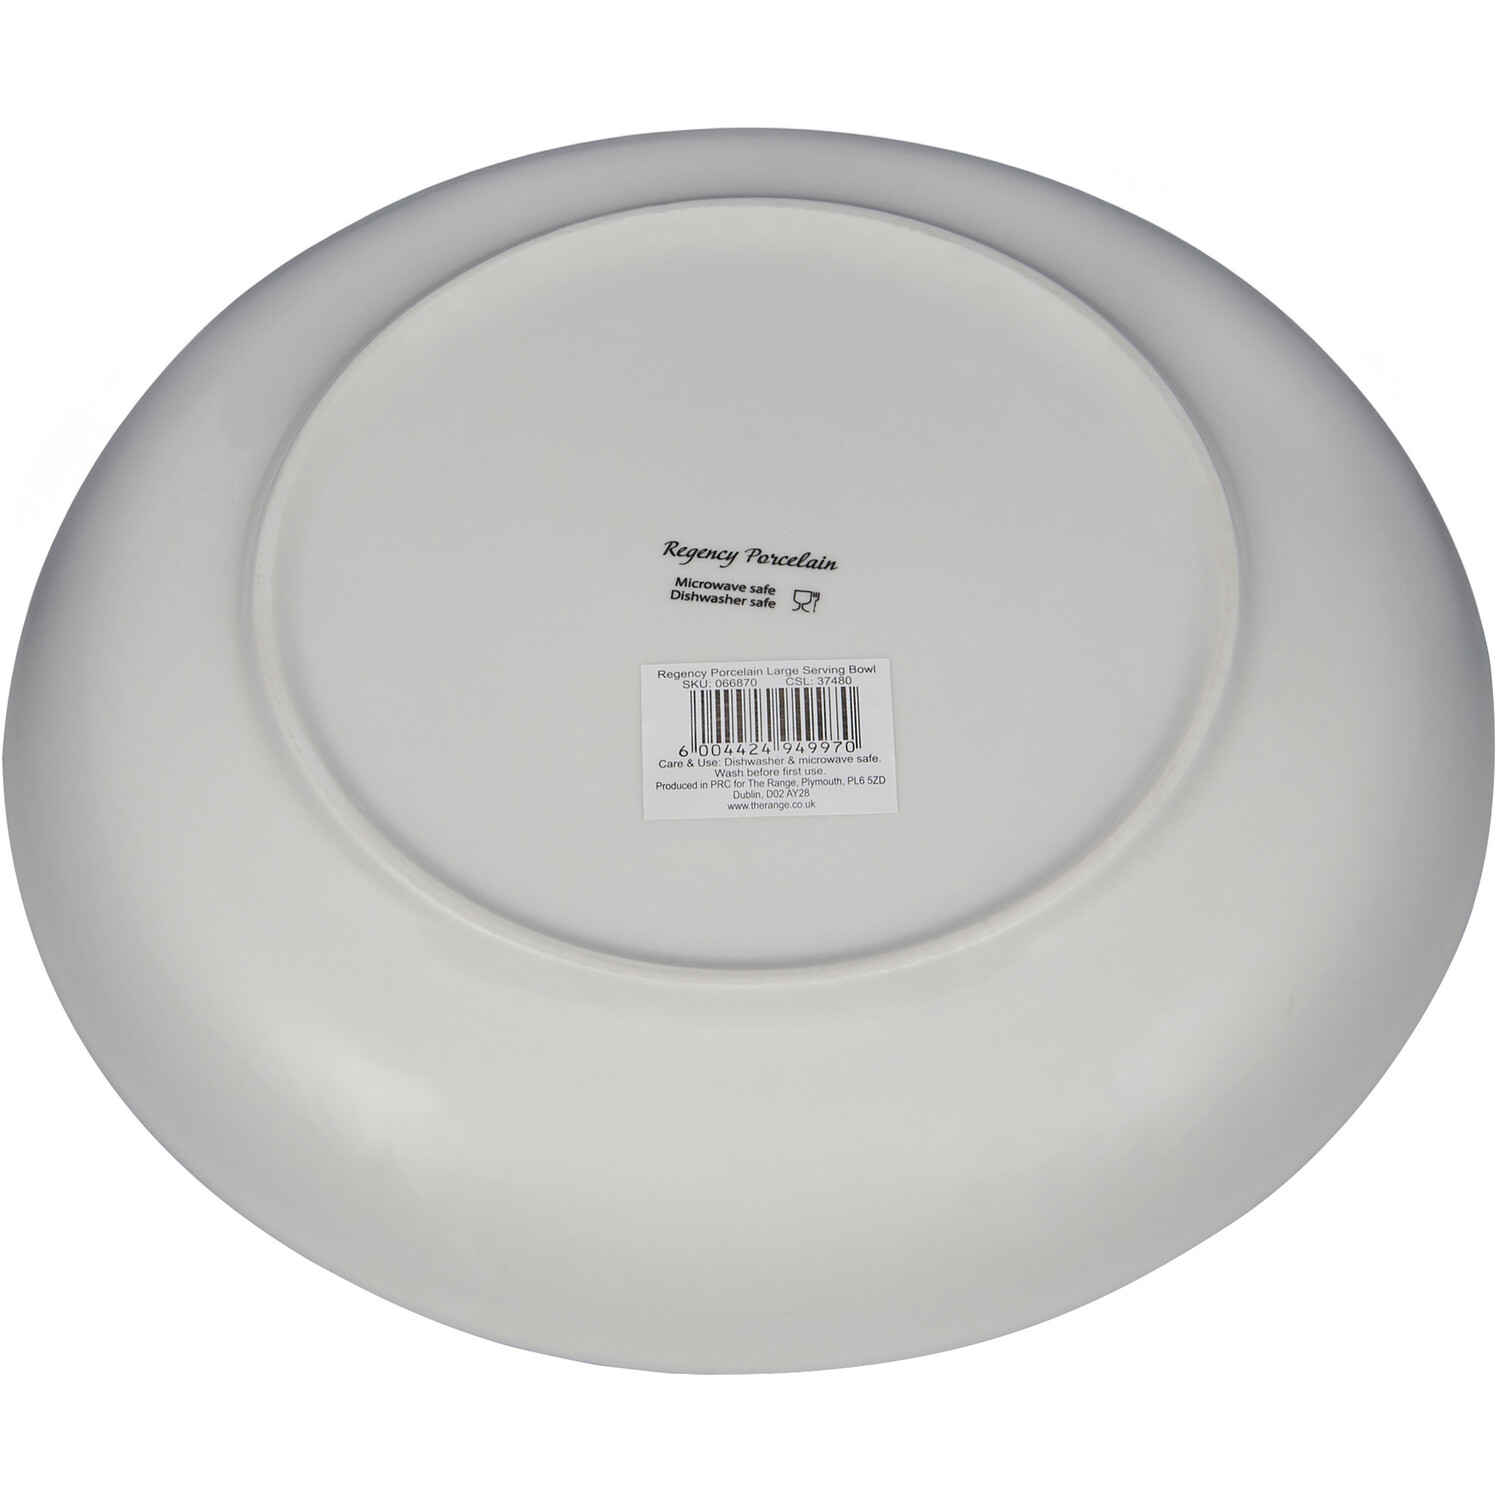 Regency Porcelain Serving Bowl - White Image 3